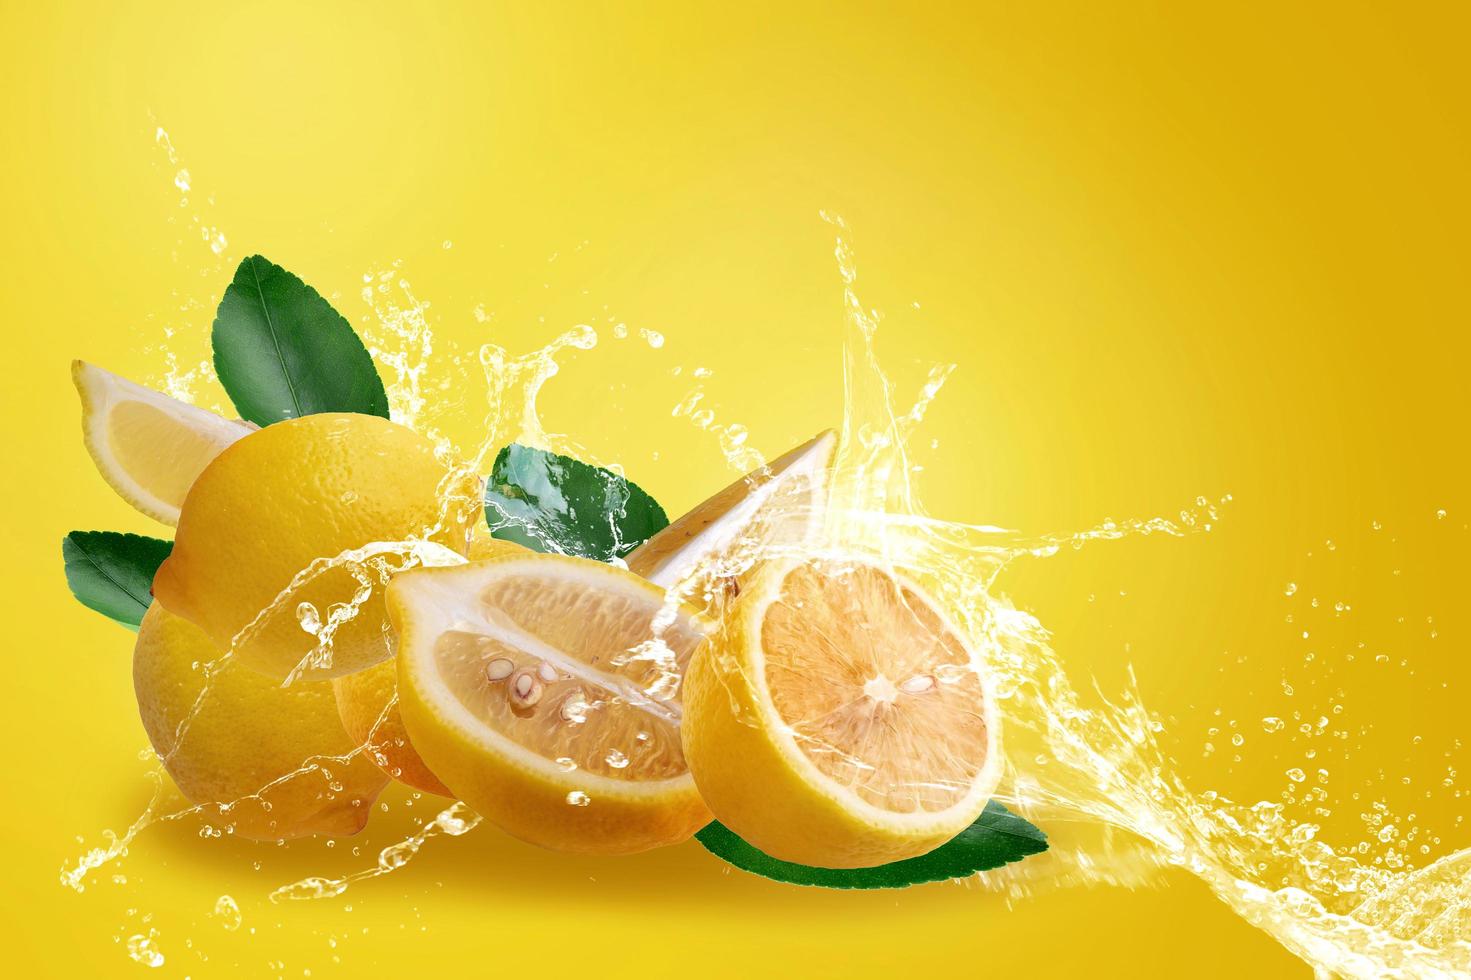 acqua che spruzza sui limoni gialli maturi affettati freschi foto